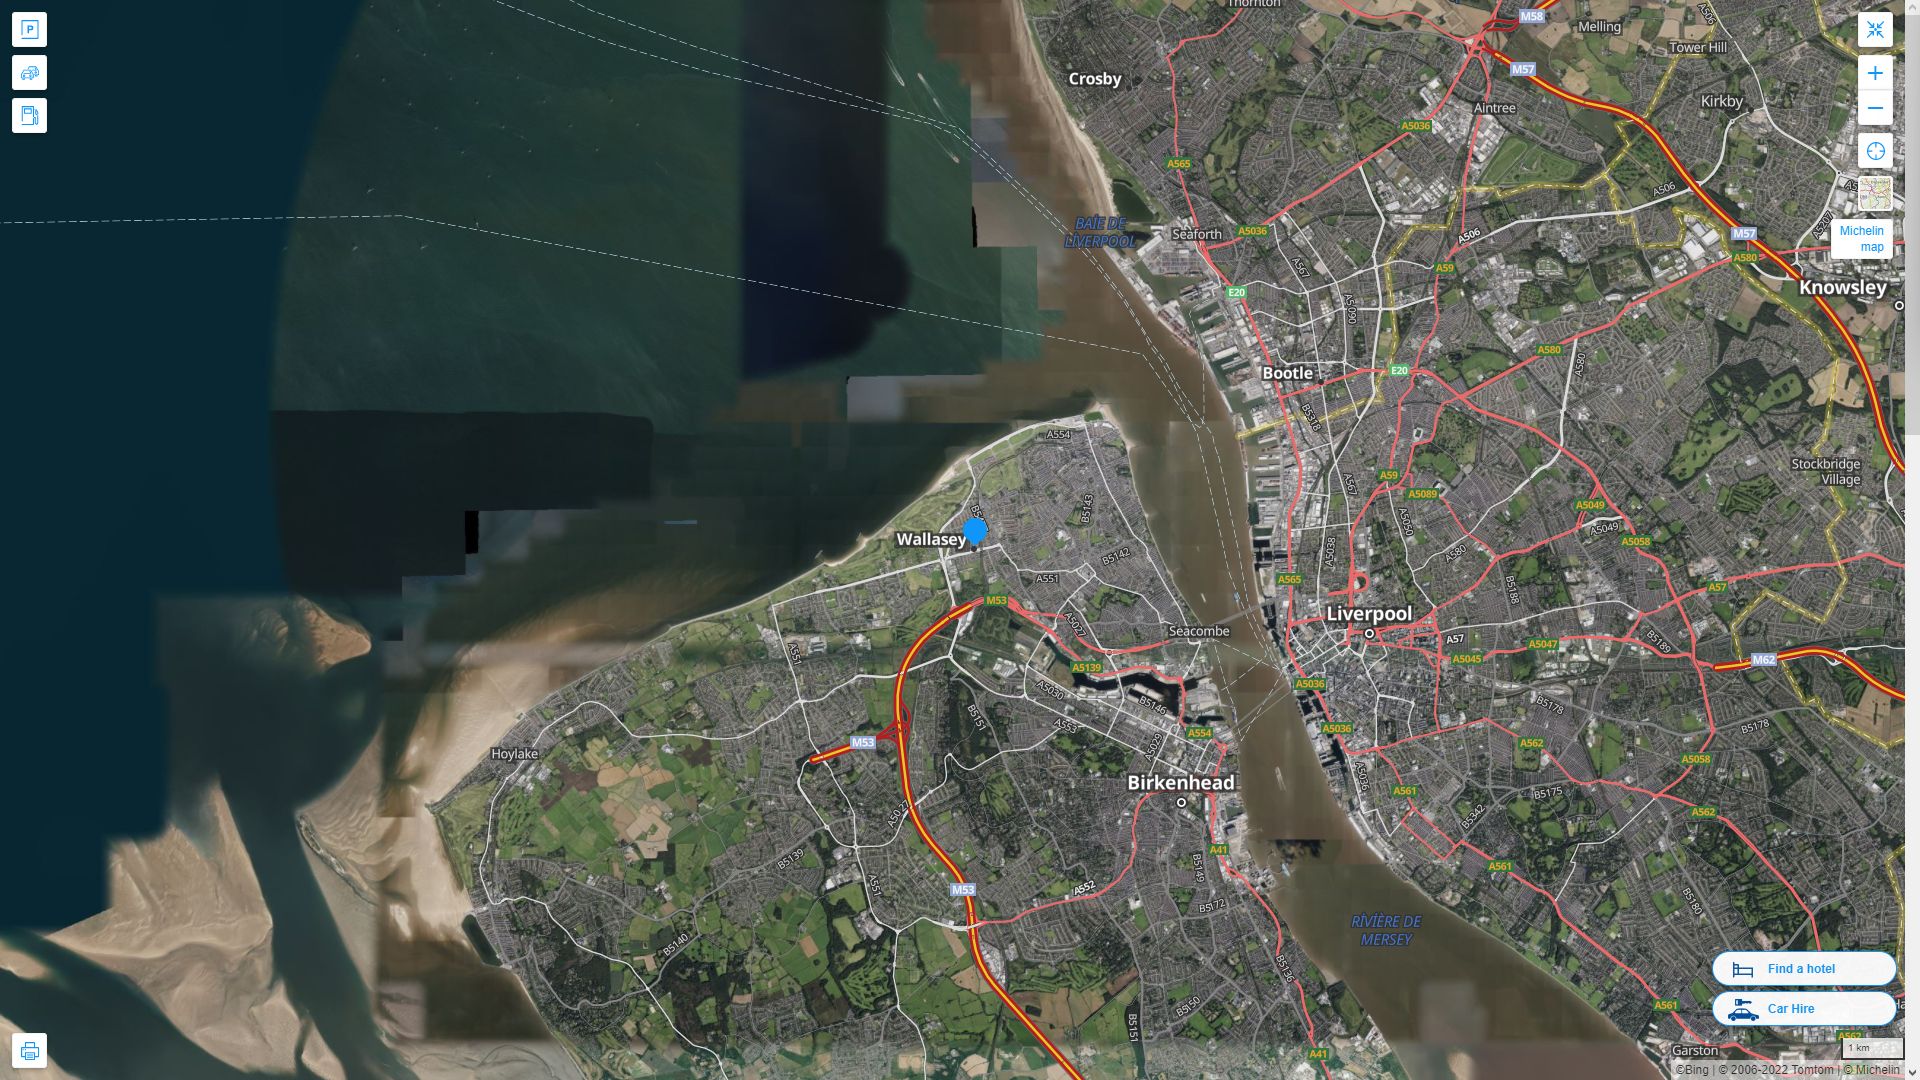 Wallasey Royaume Uni Autoroute et carte routiere avec vue satellite